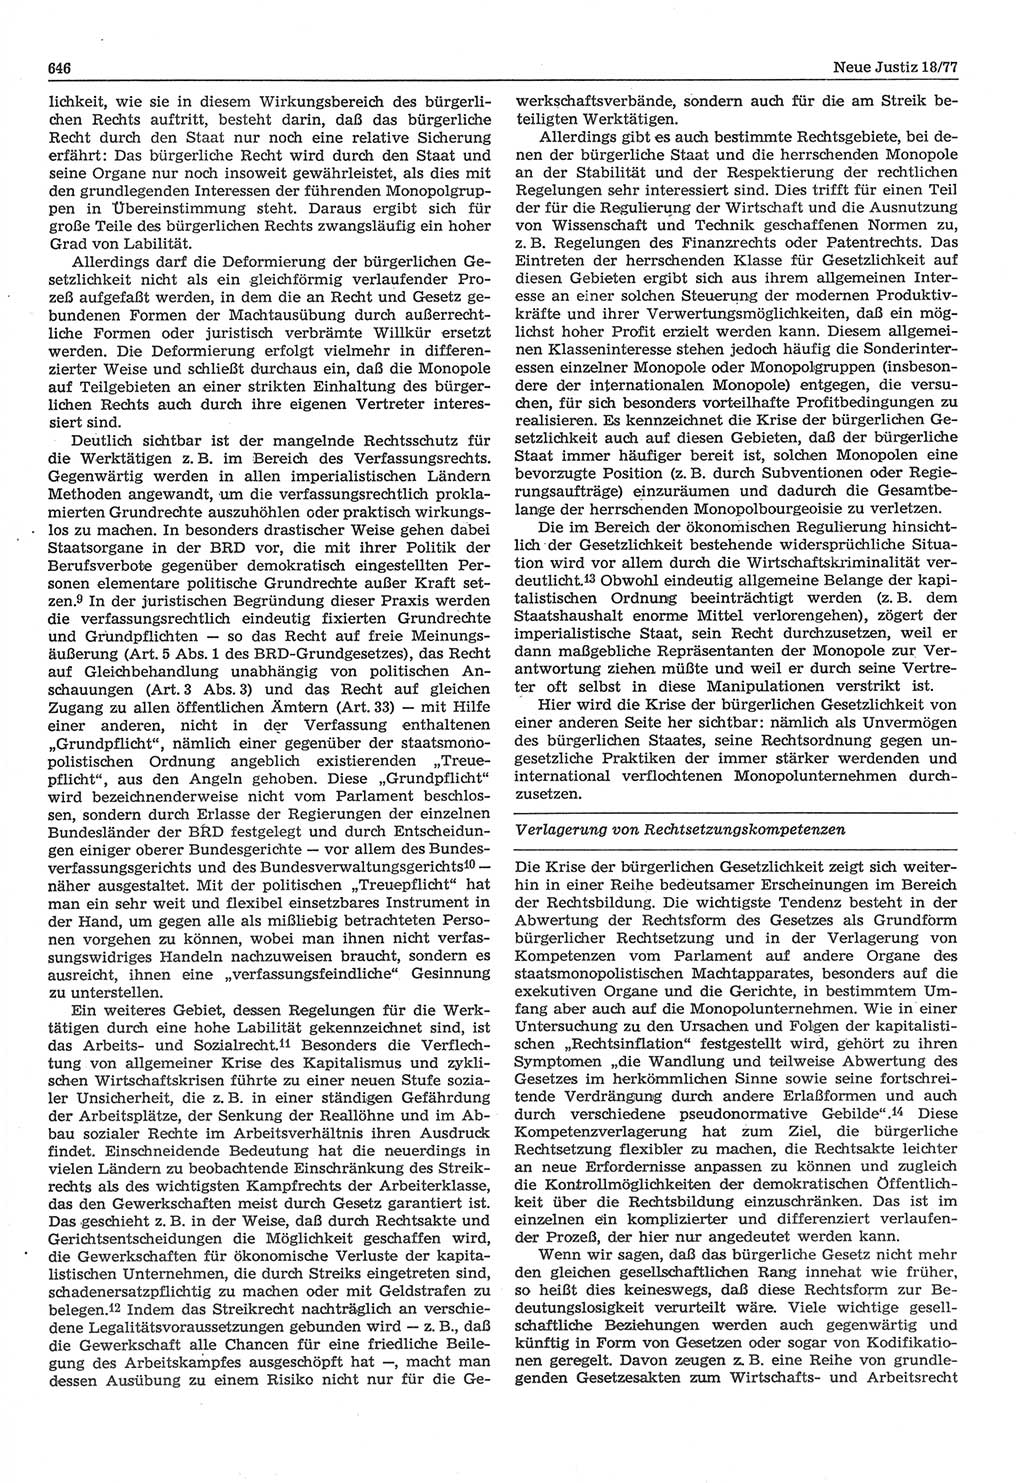 Neue Justiz (NJ), Zeitschrift für Recht und Rechtswissenschaft-Zeitschrift, sozialistisches Recht und Gesetzlichkeit, 31. Jahrgang 1977, Seite 646 (NJ DDR 1977, S. 646)